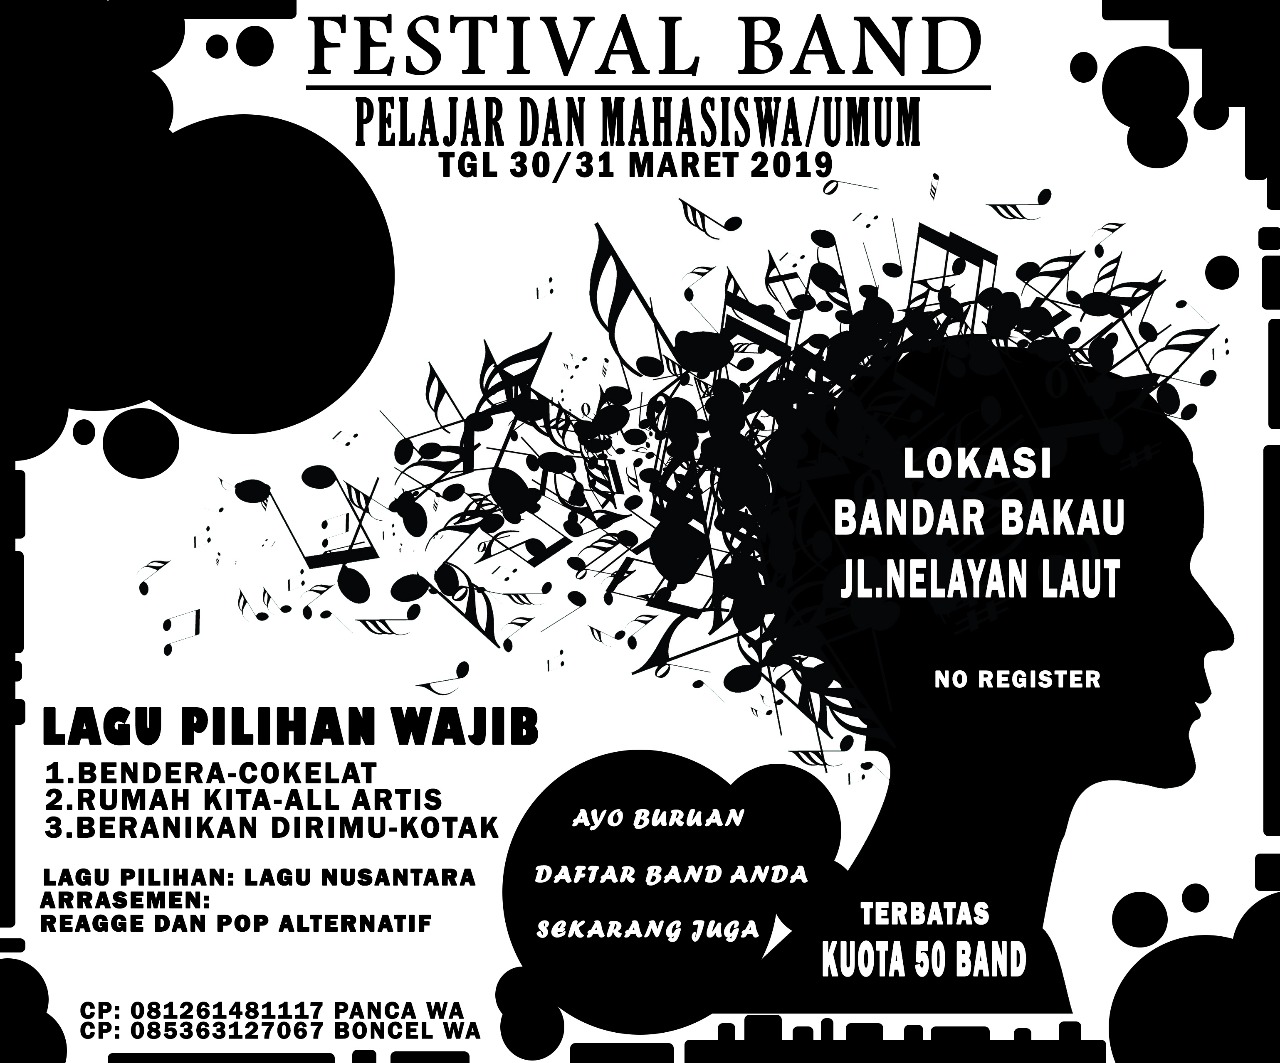 Disdikbud Dumai Akan Gelar Festival Band Pelajar dan Mahasiswa/Umum se Riau